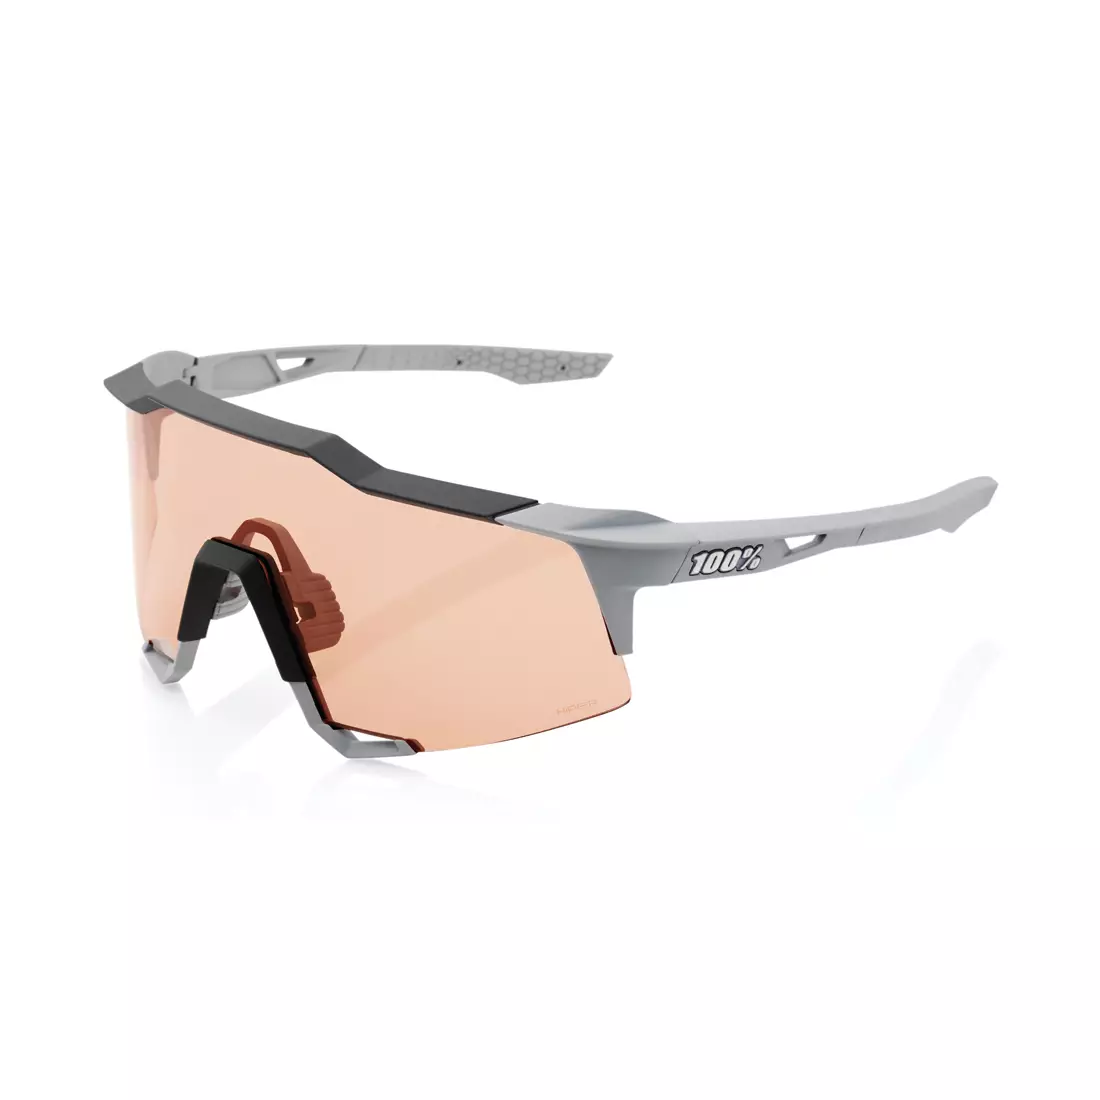 100% sportovní brýle SPEEDCRAFT (HiPER Coral Lens) Soft Tact Stone Grey STO-61001-424-01